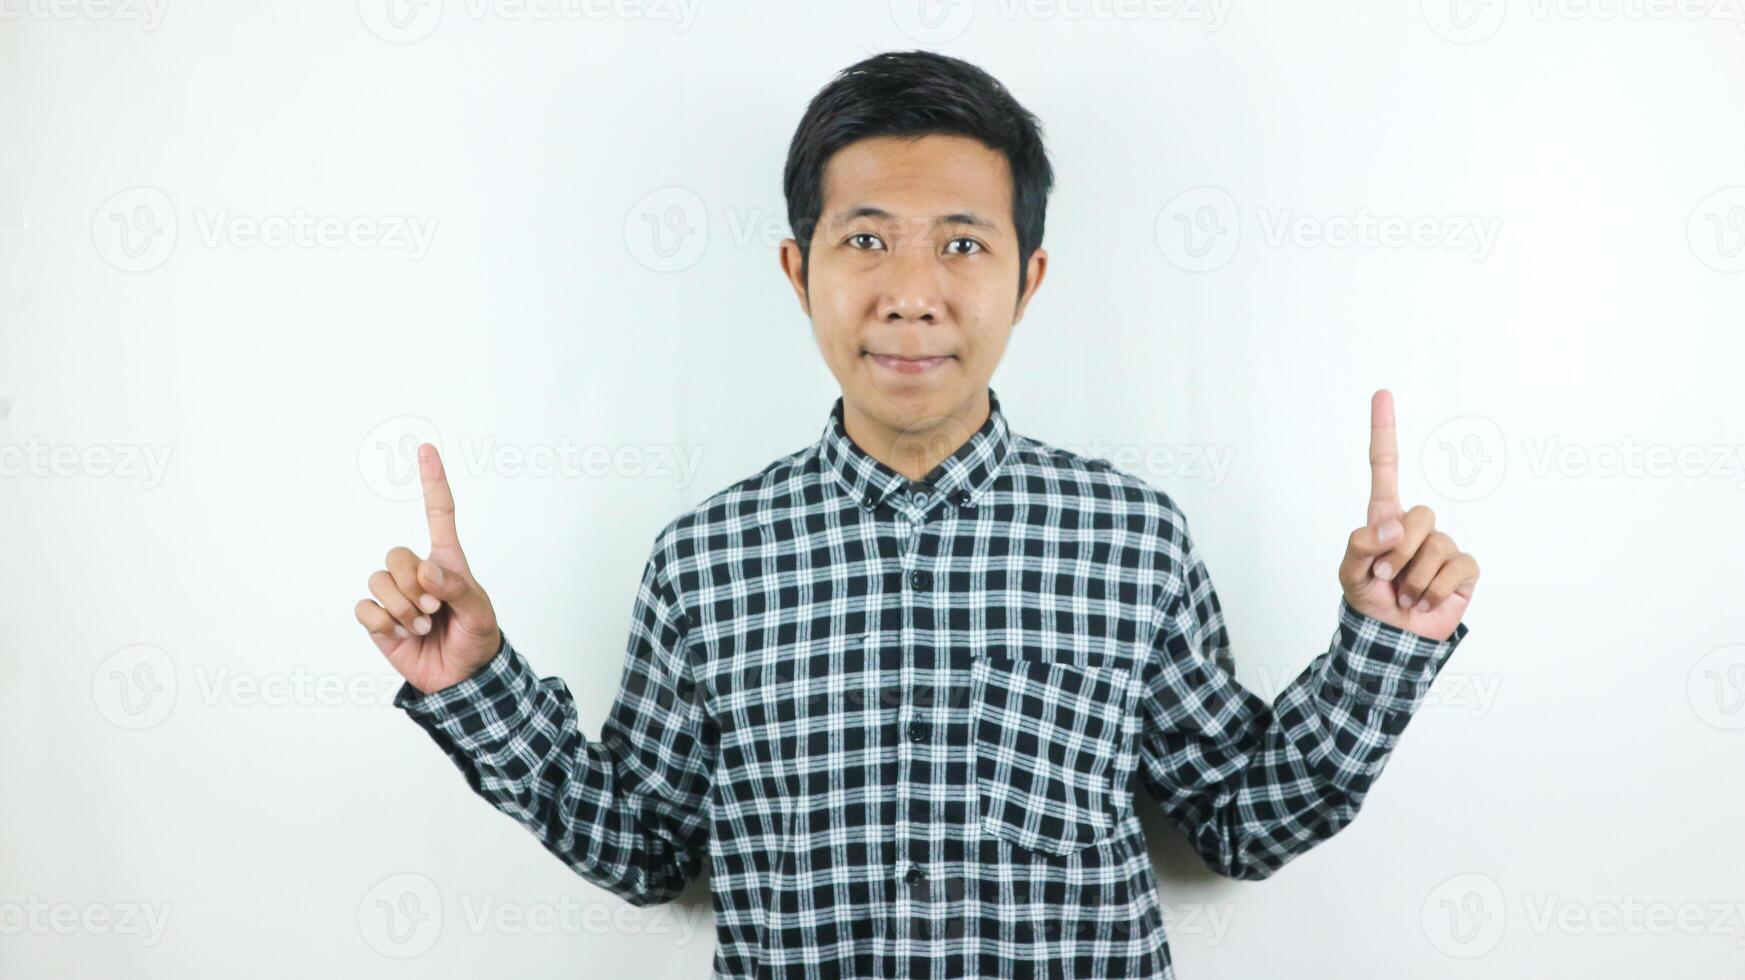 Erwachsene asiatisch Mann tragen Plaid Hemd lächelnd während suchen und zeigen oben Seite. foto